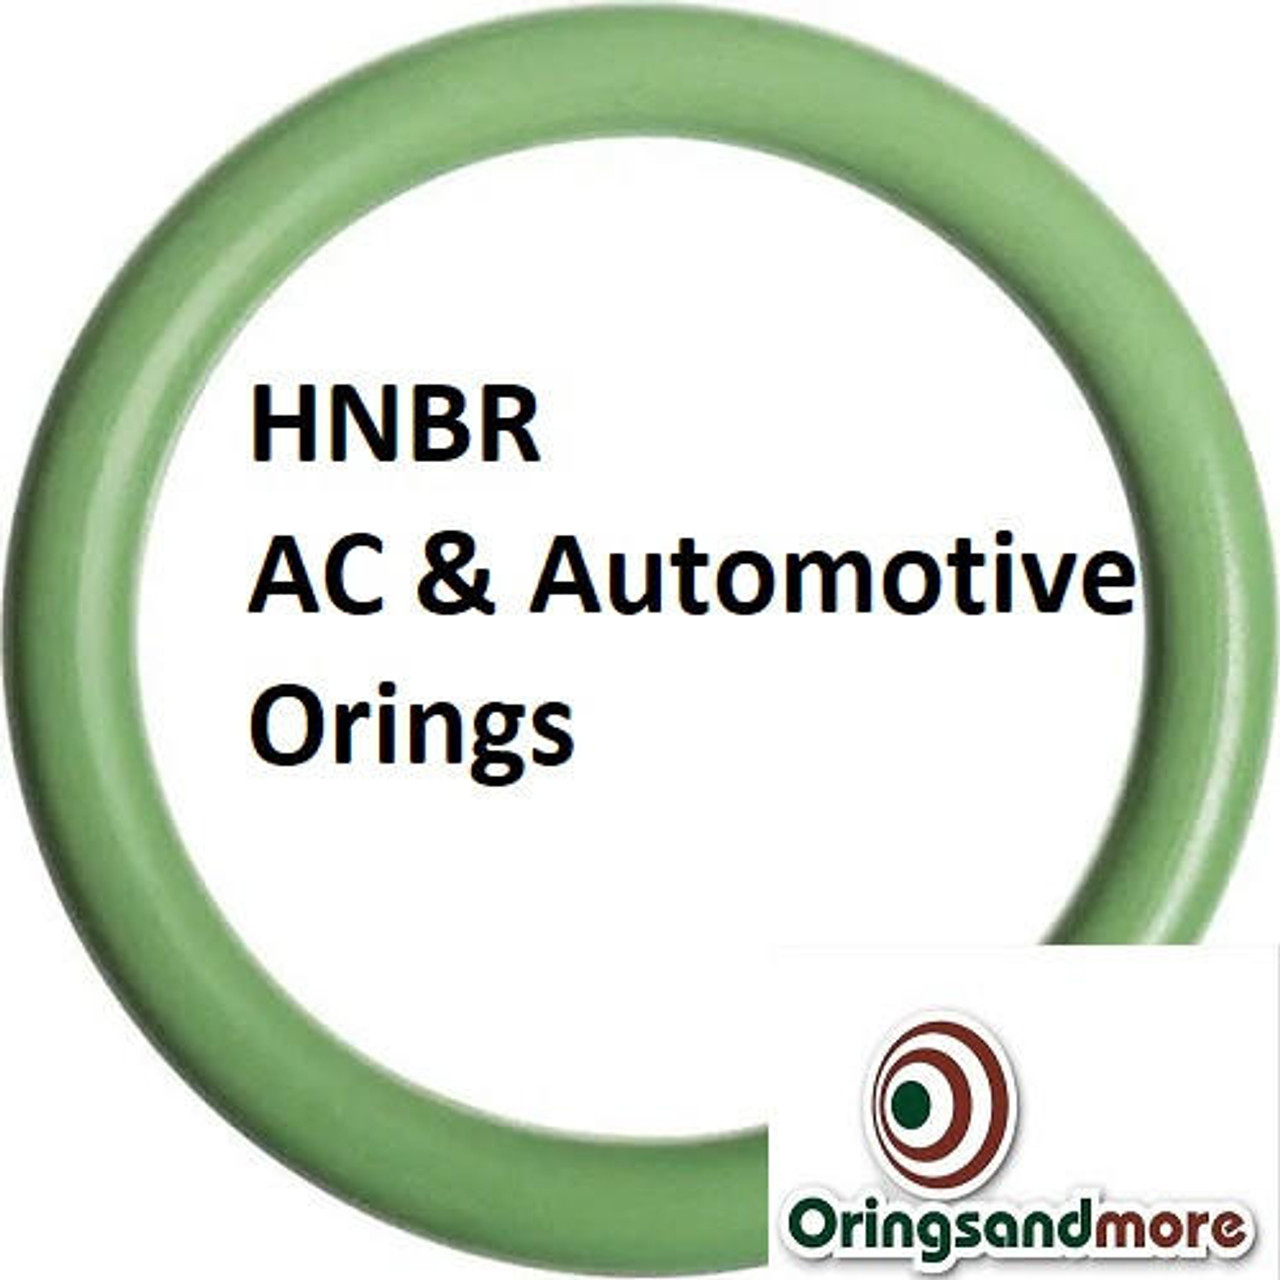 HNBR Orings  # 016-70D Green  Minimum 10 pcs